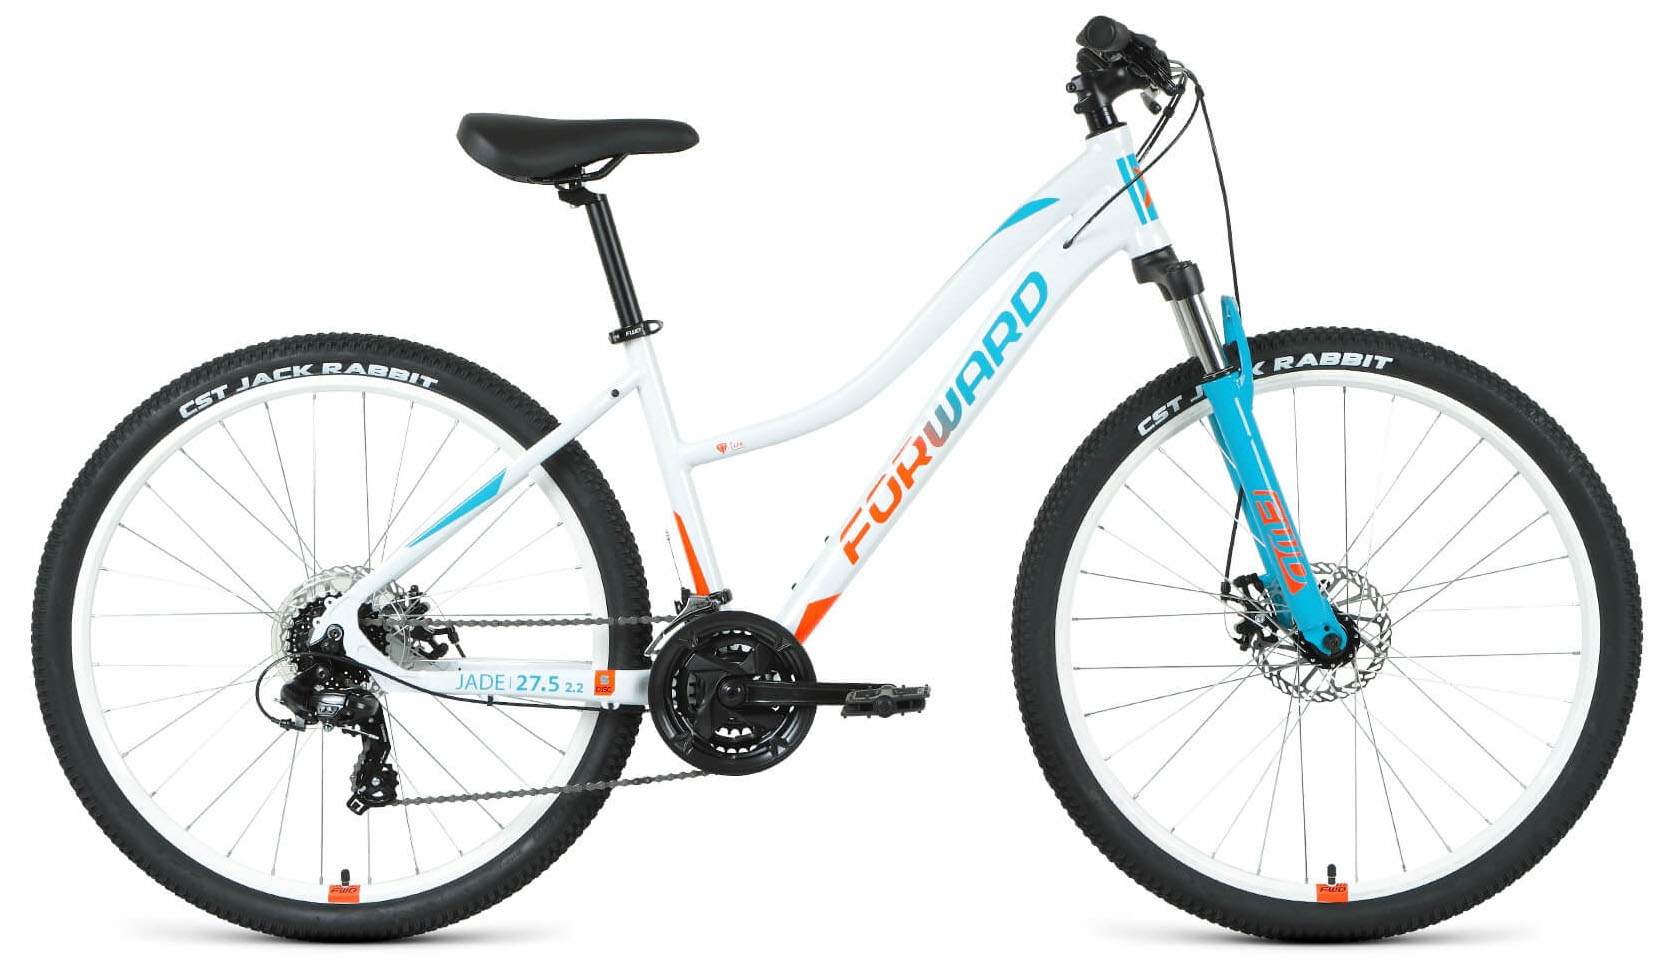  Отзывы о Женском велосипеде Forward Jade 27,5 2.0 D 2022